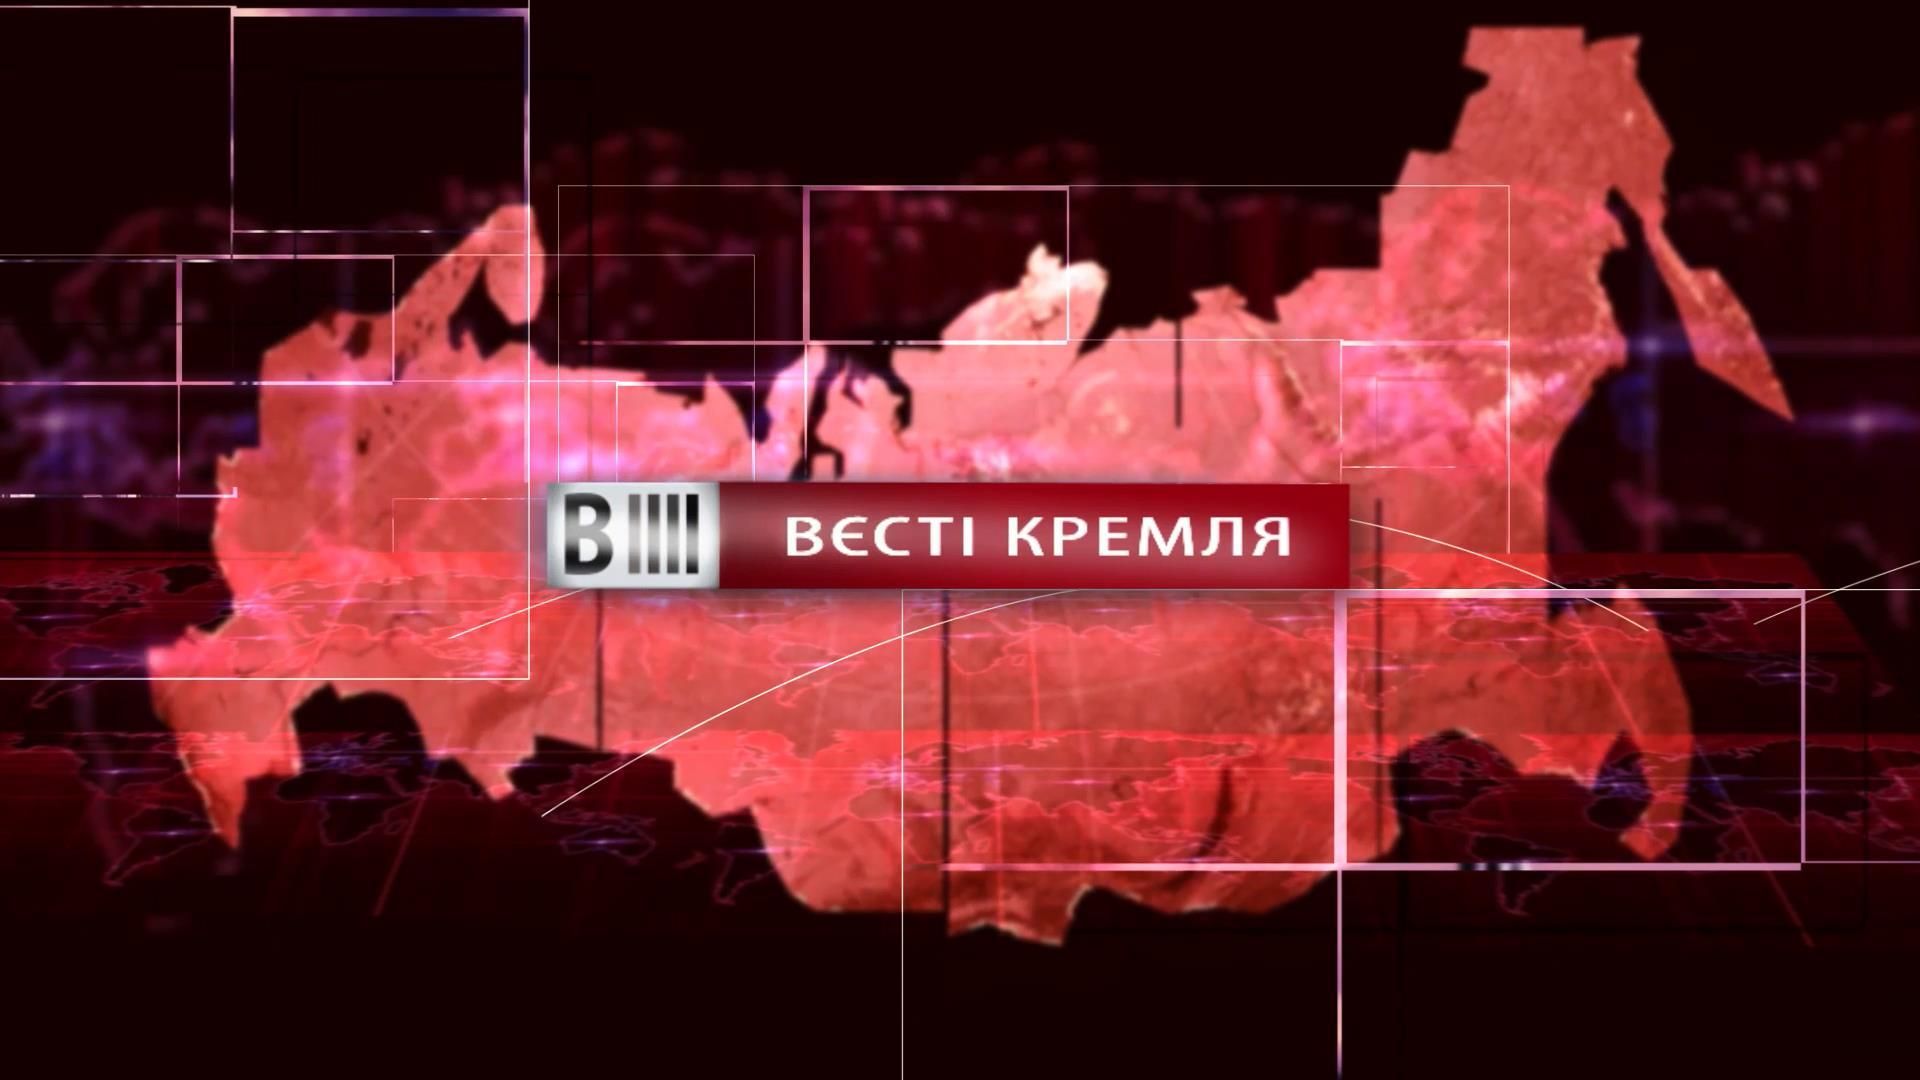 Смотрите "Вести Кремля". Прямая линия царя. Утко-агитация